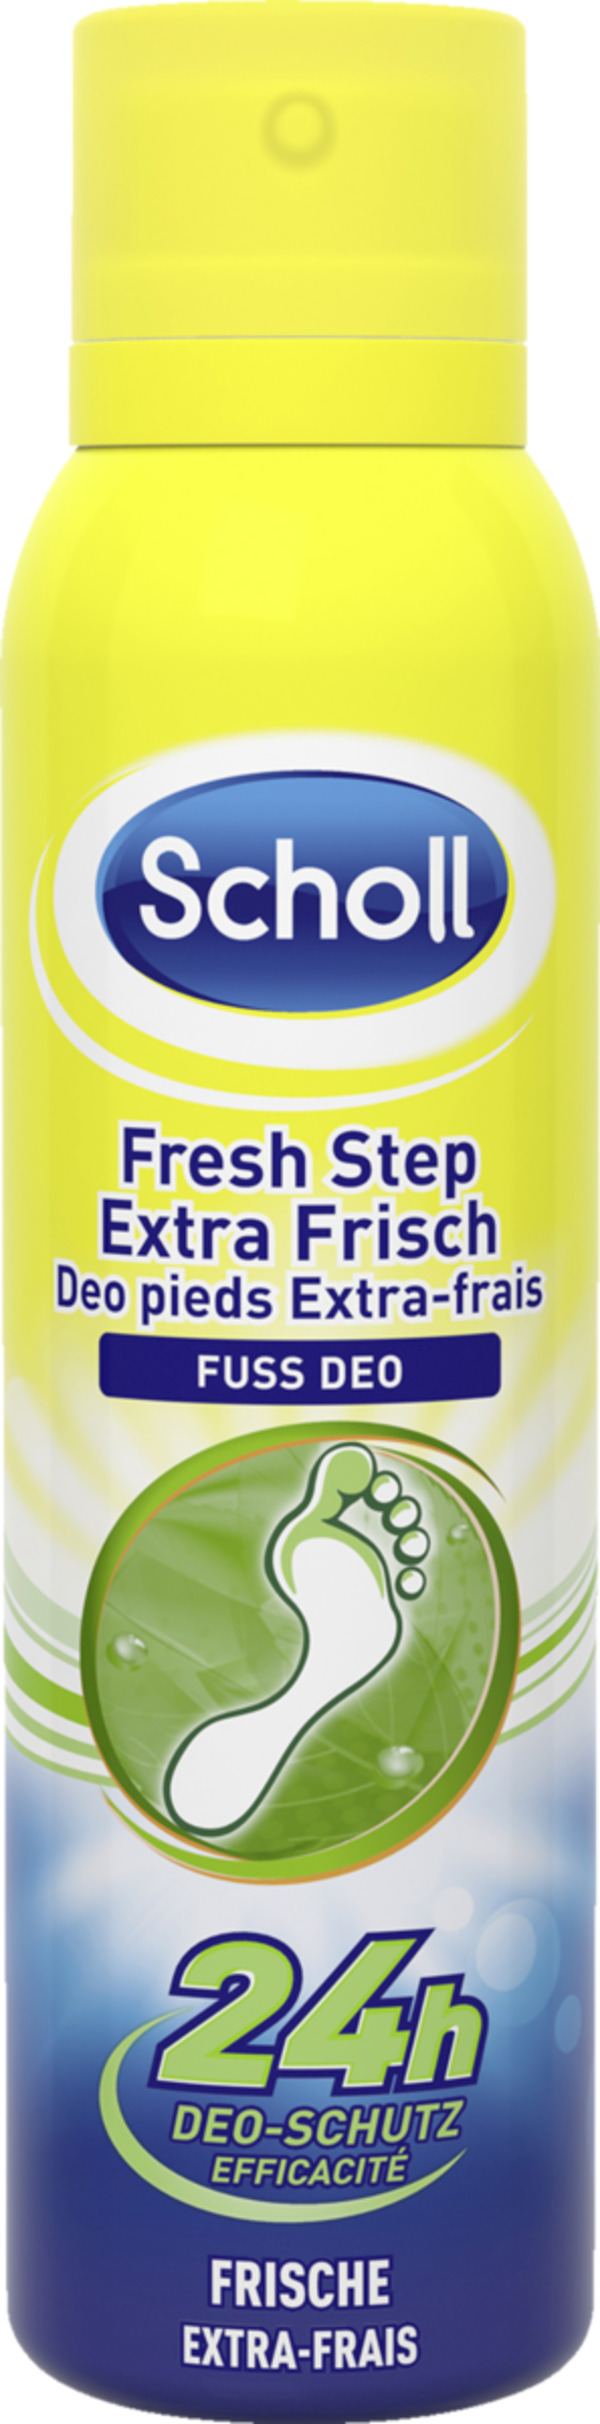 Bild 1 von Scholl 
            Fresh Step Extra Frisch Fuss Deo Spray